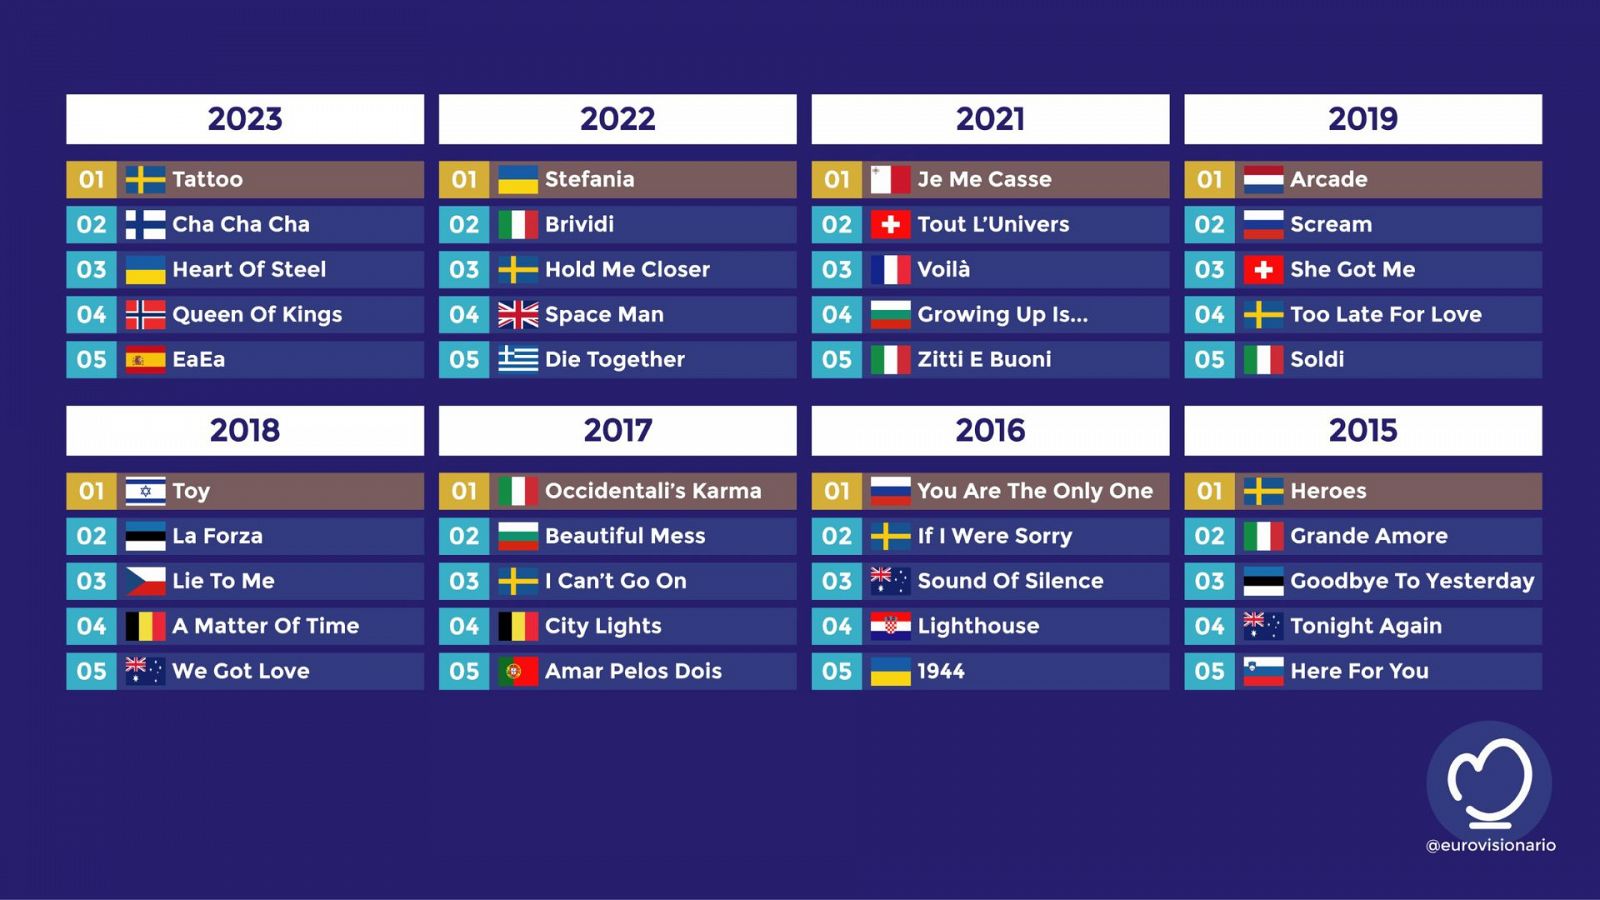 Casa apuestas eurovision 2023